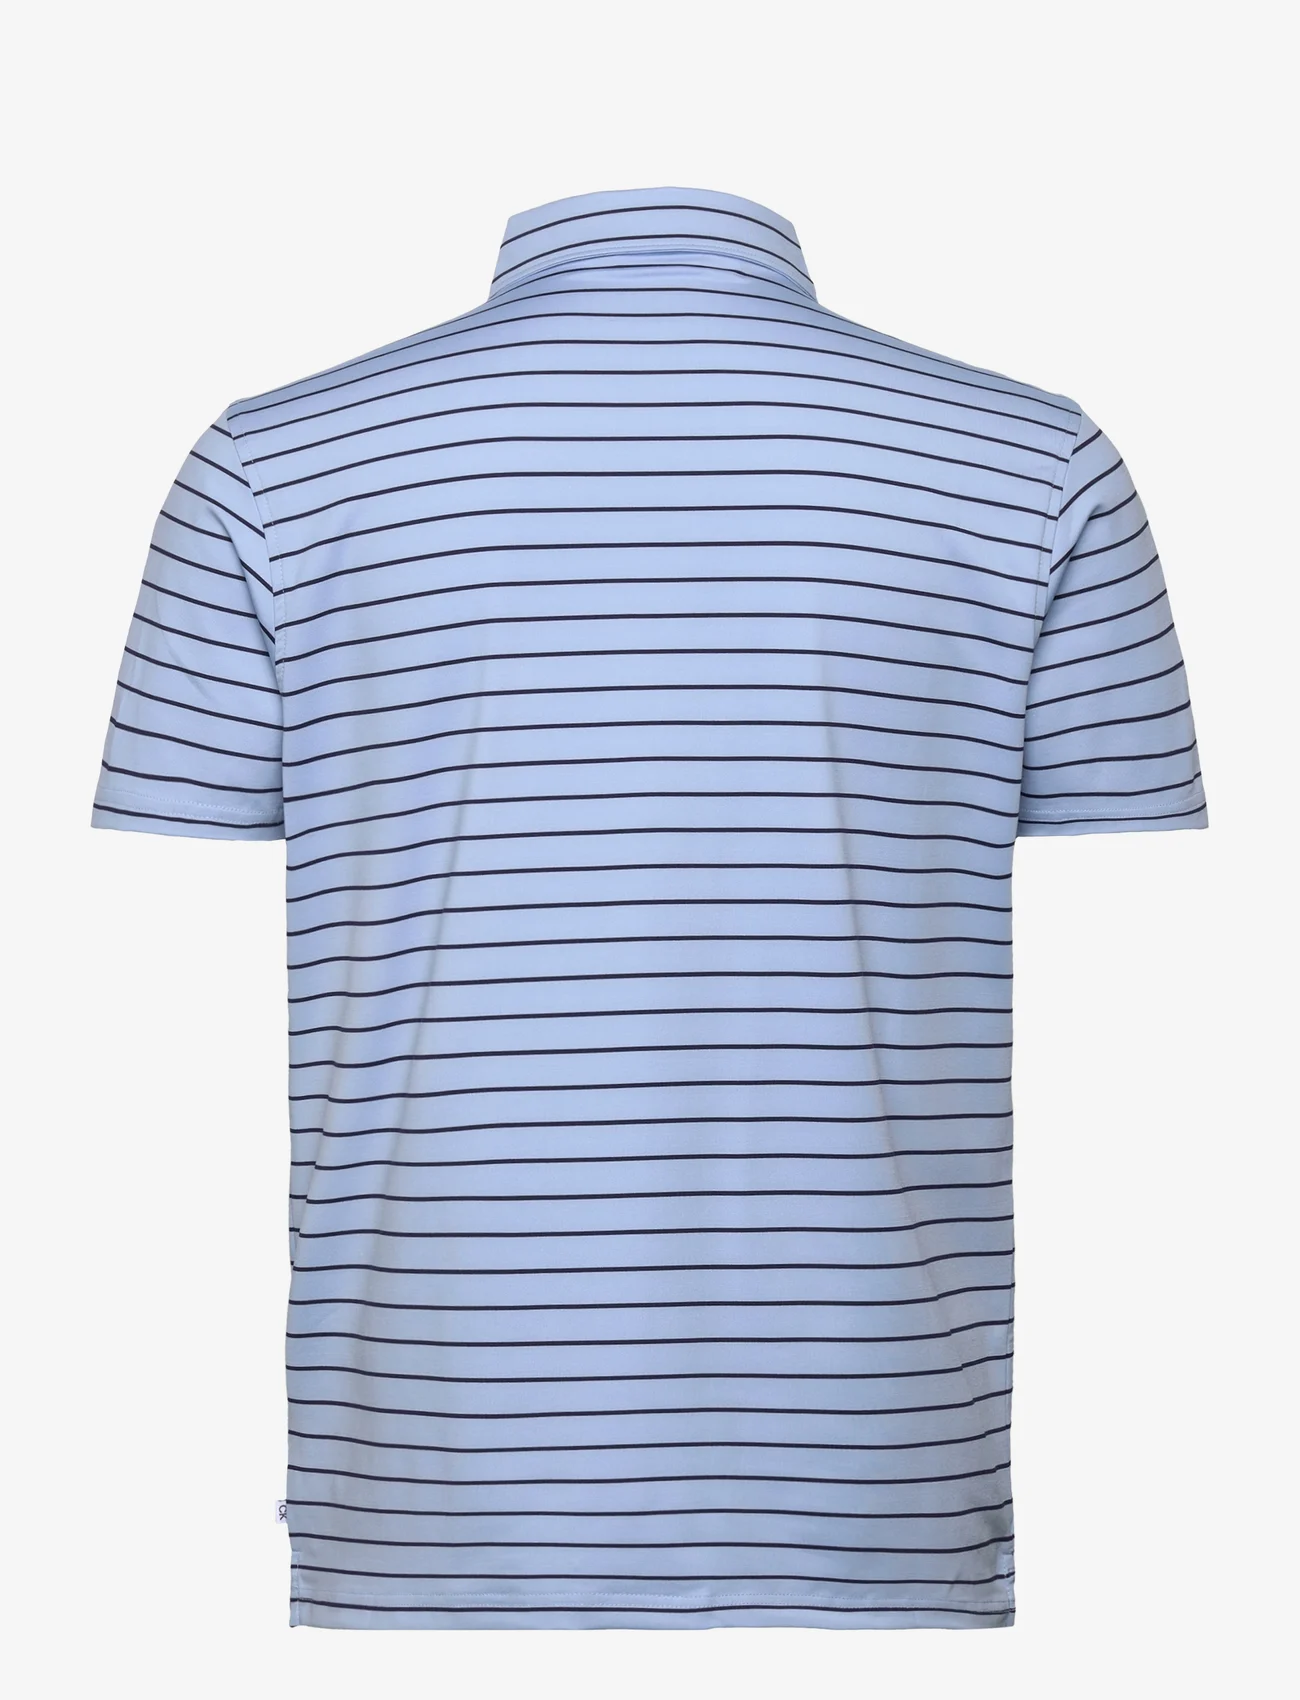 Calvin Klein Golf - SILVERSTONE POLO - short-sleeved polos - blue-evening blue - 1